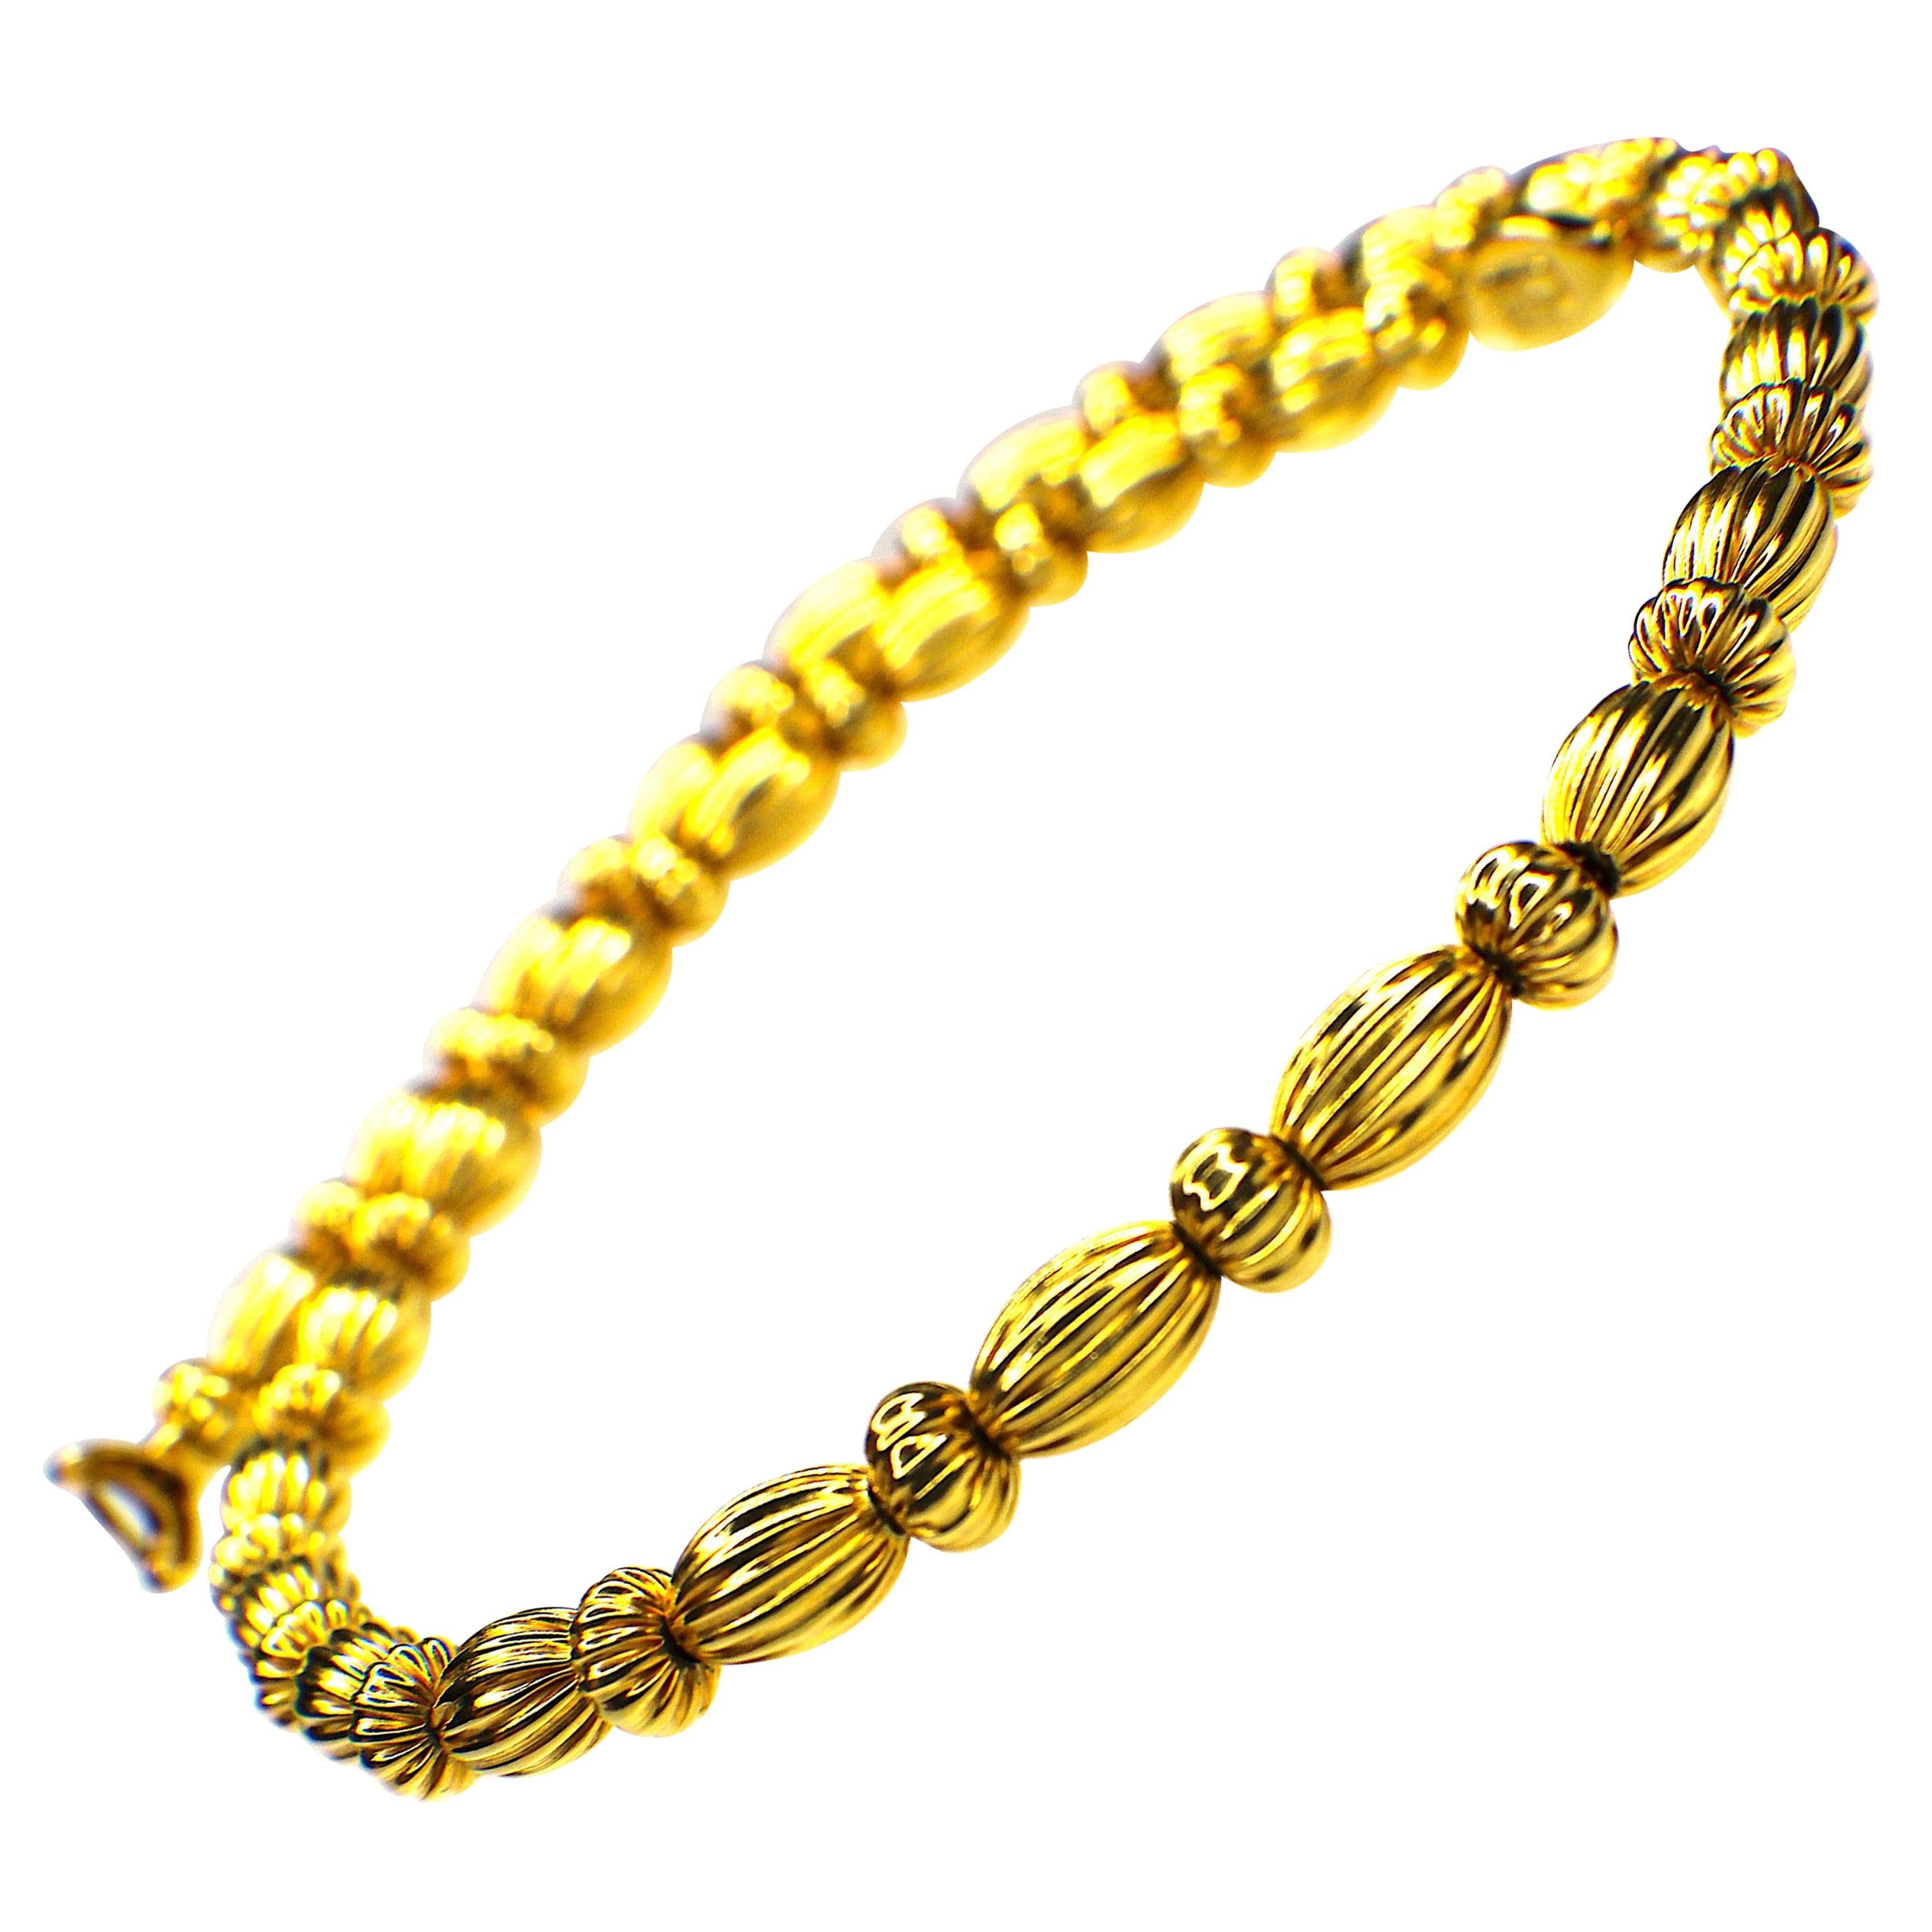 GEMOLITHOS "Seeds" Necklace 18 Karat Gold